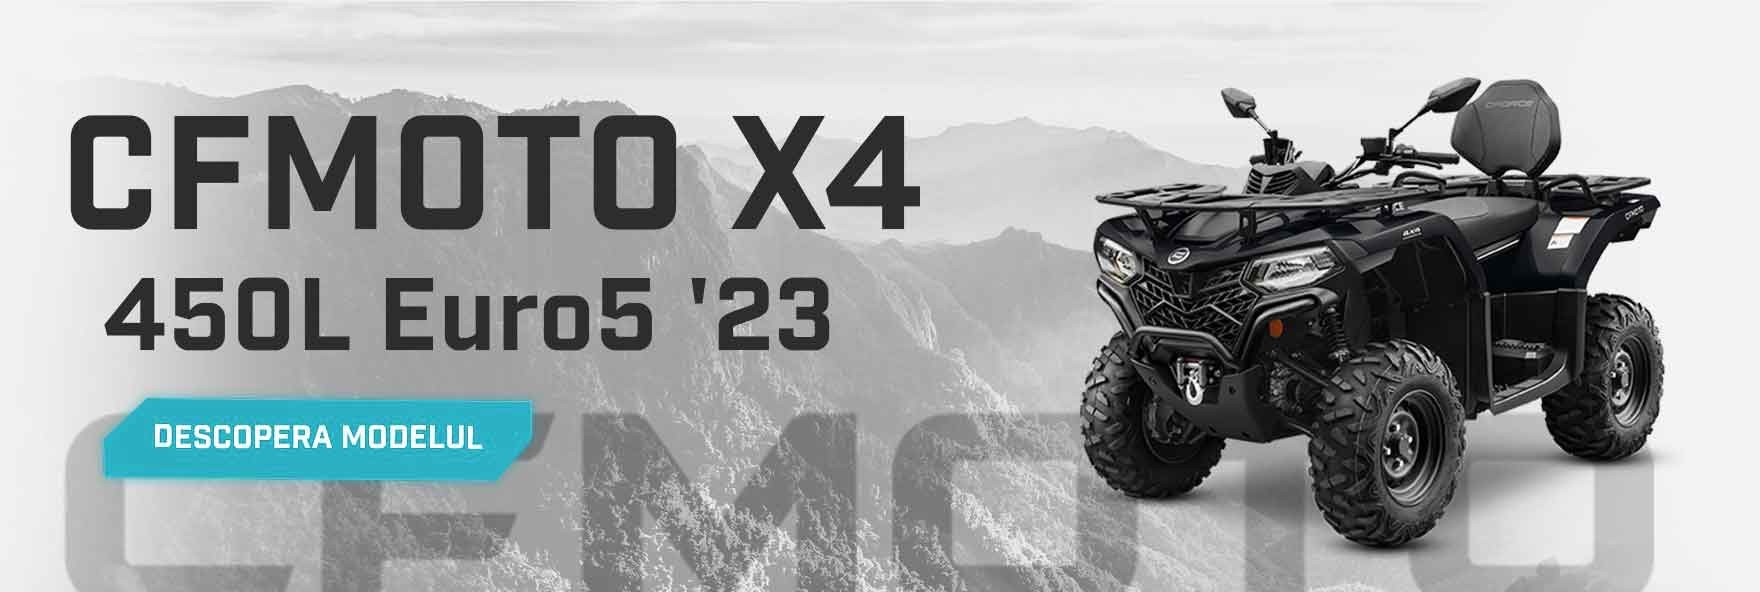 CFMOTO X4 CForce 450L Euro5 '23